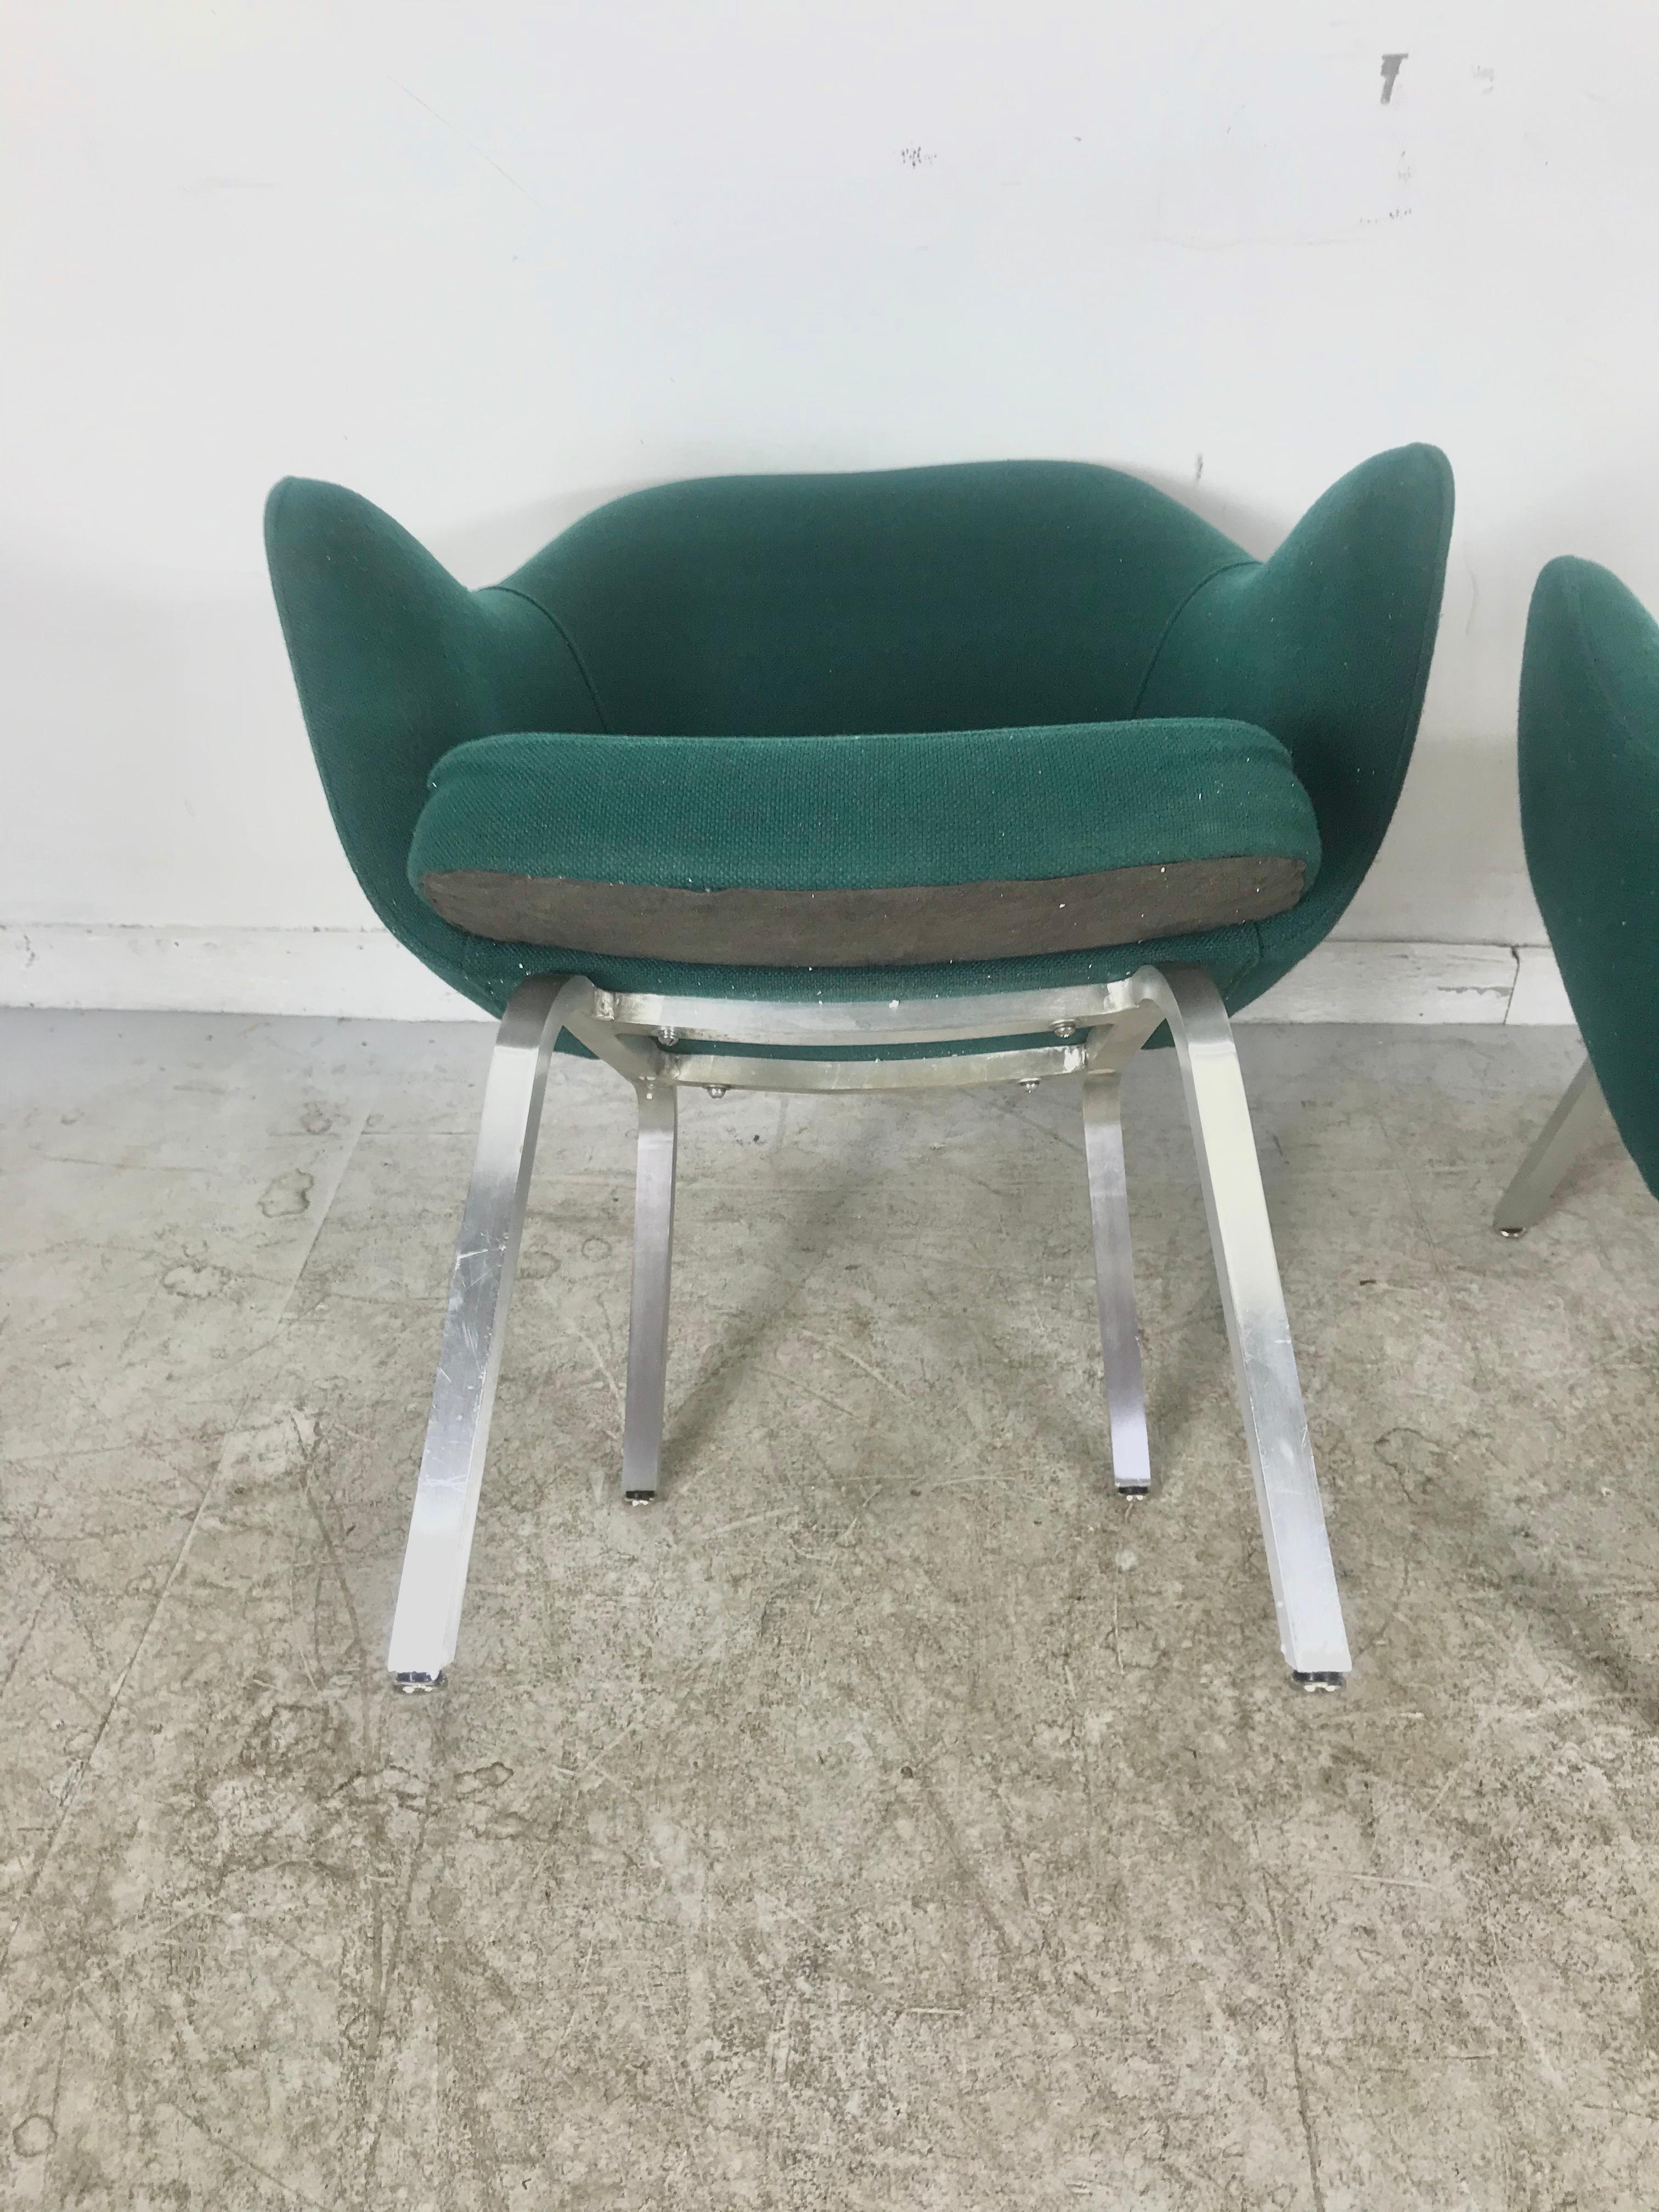 Entworfen für ein Jahr in sehr begrenzter Produktion laufen, Executive Lounge Sessel von Eero Saarinen für Knoll, ungewöhnliche quadratische Lager Aluminiumbasen, etwas niedriger zurück Beine machen diese extrem bequem, perfekte Position, behalten